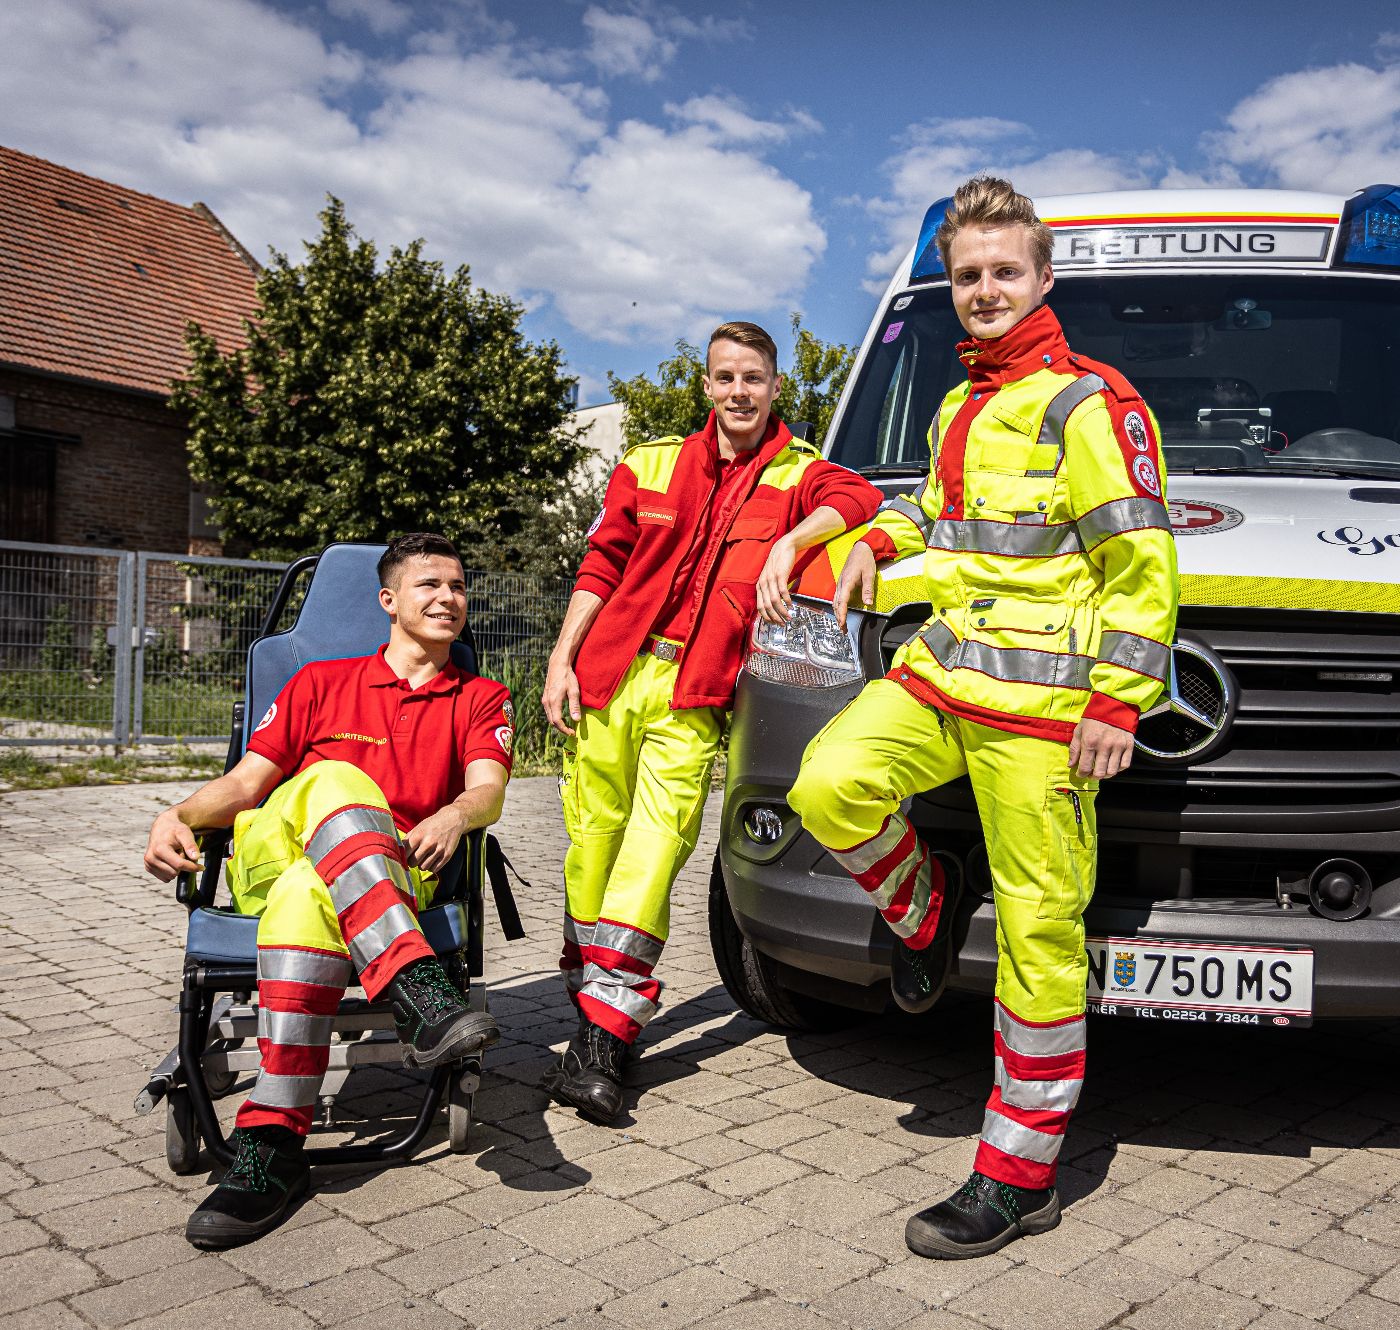 Drei Zivildiener in Uniform des Arbeiter-Samariter-Bundes Österreichs neben einem Rettungsauto